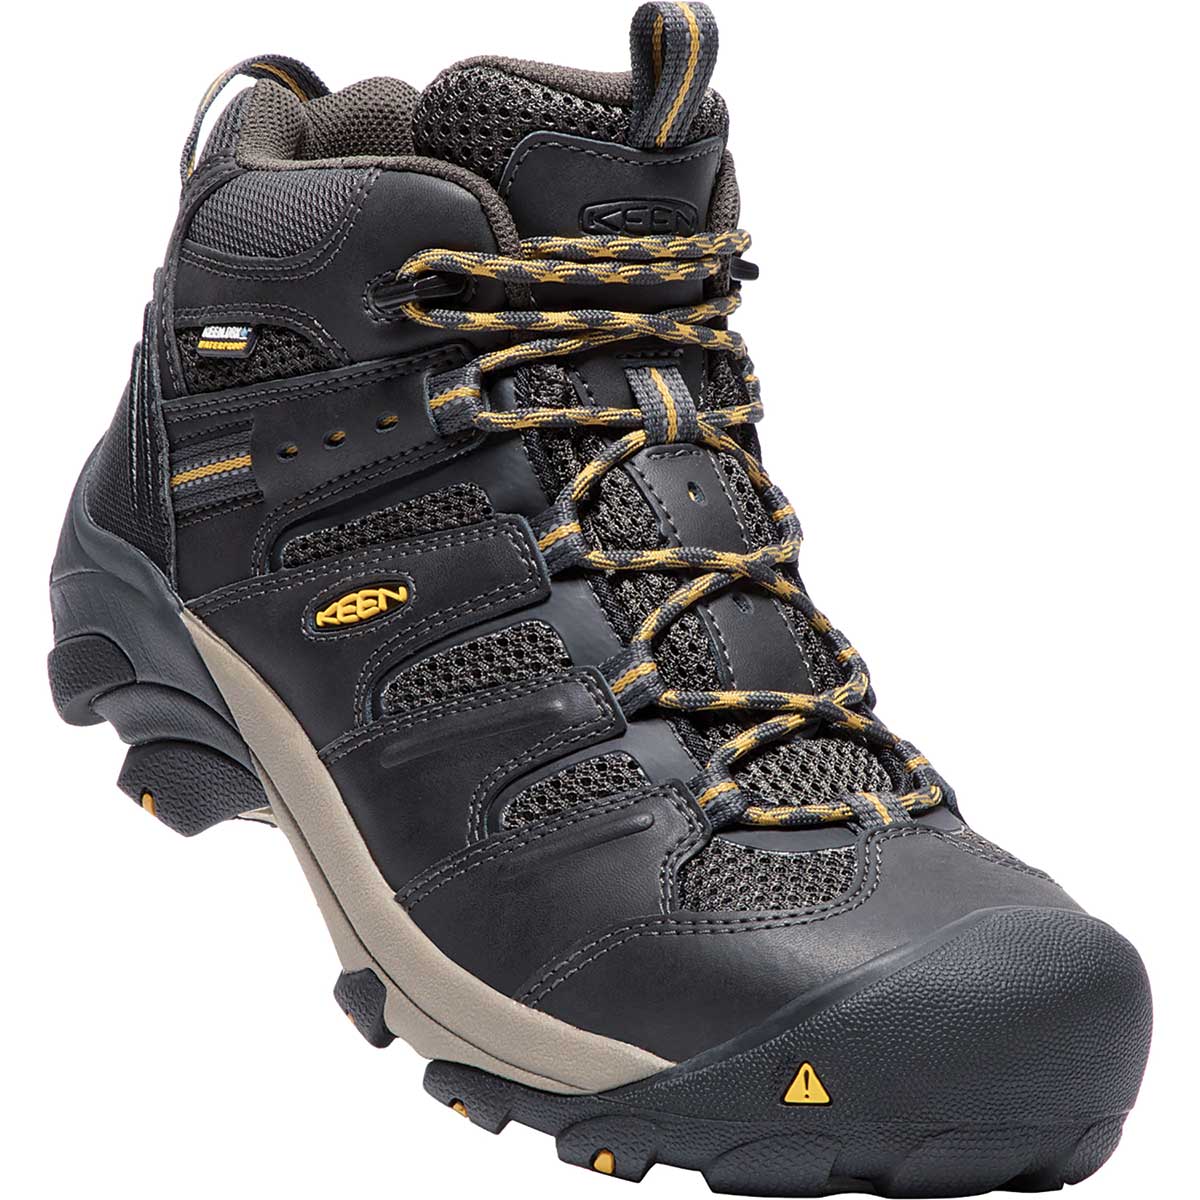 KEEN Utility Men's Lansing Mid Waterproof Steel Toe Hiker Boots